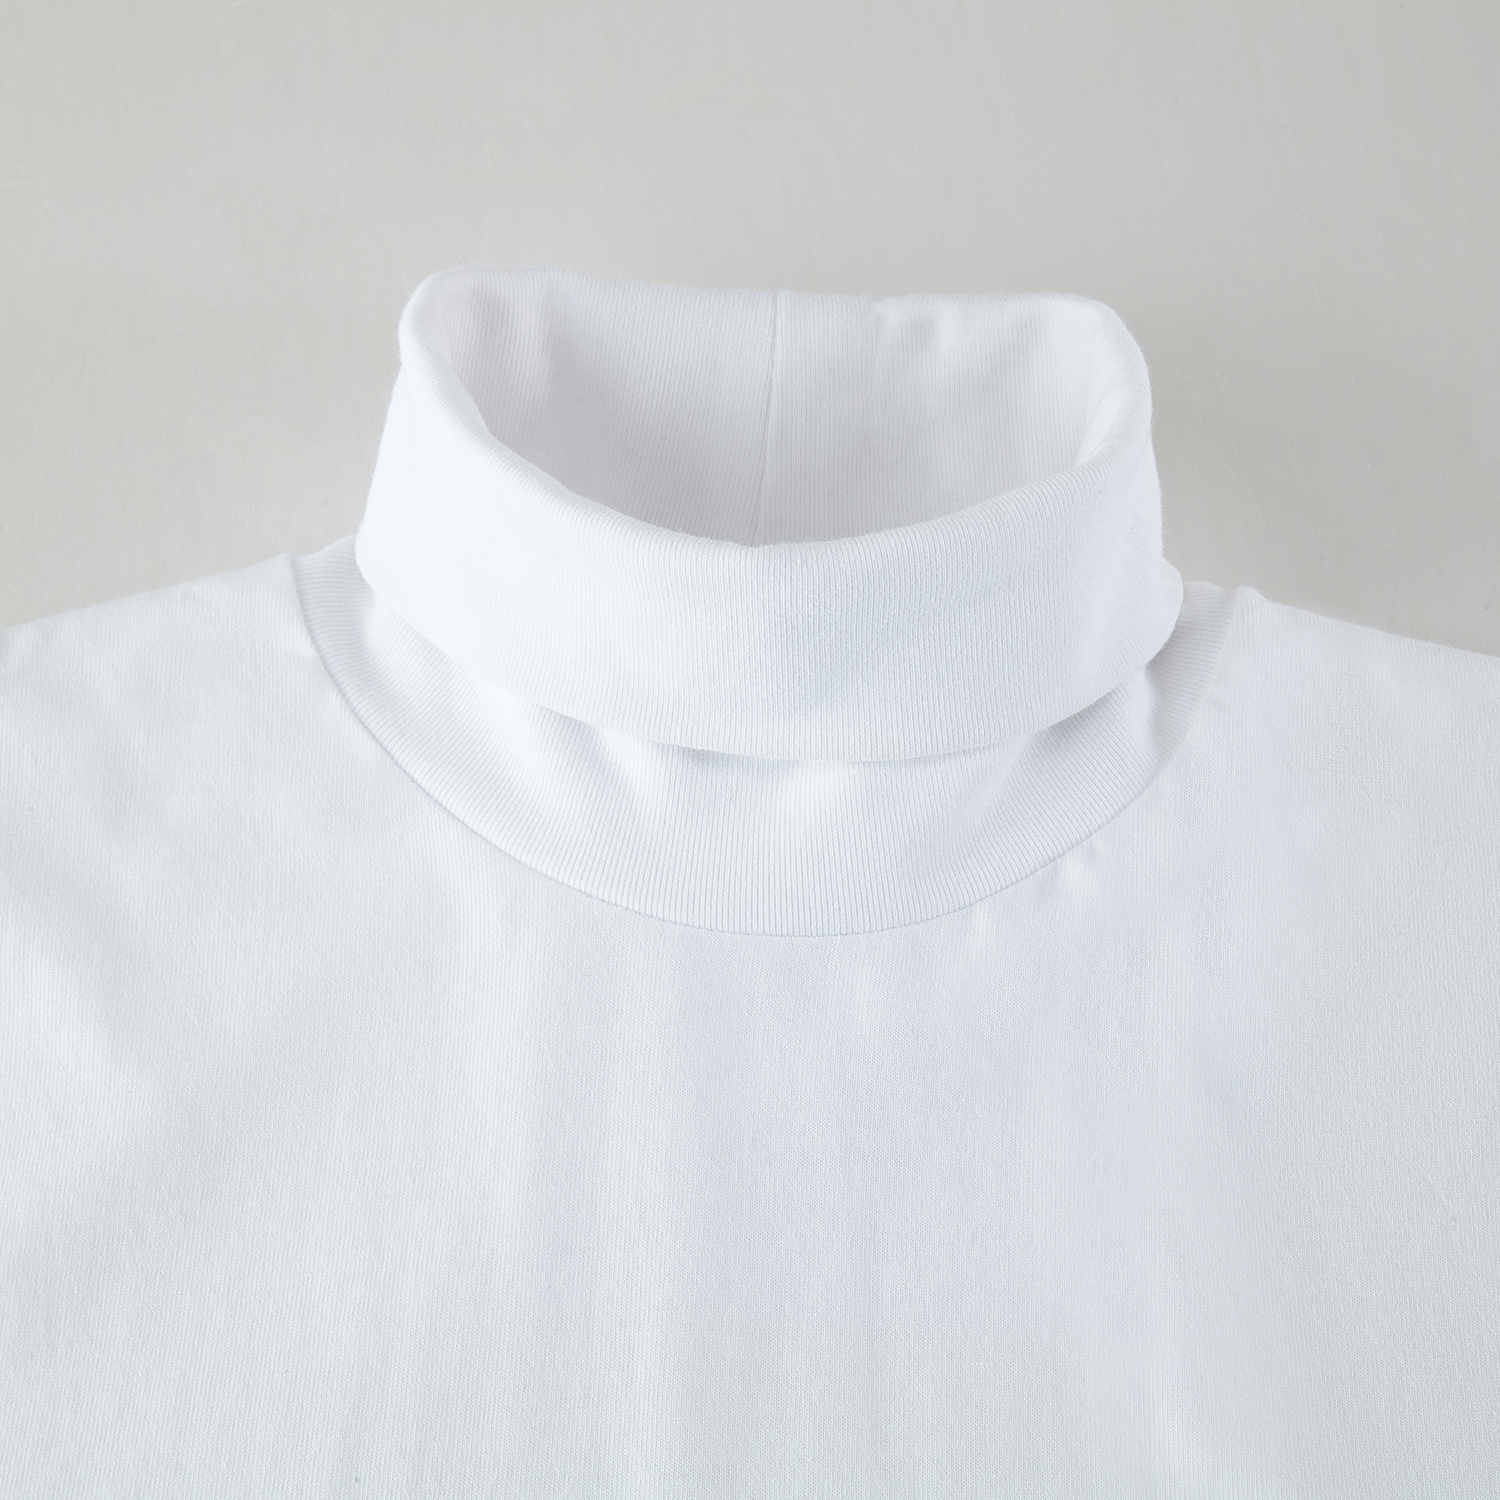 Men's High Neck Long Sleeve Shirt | HugePOD-4